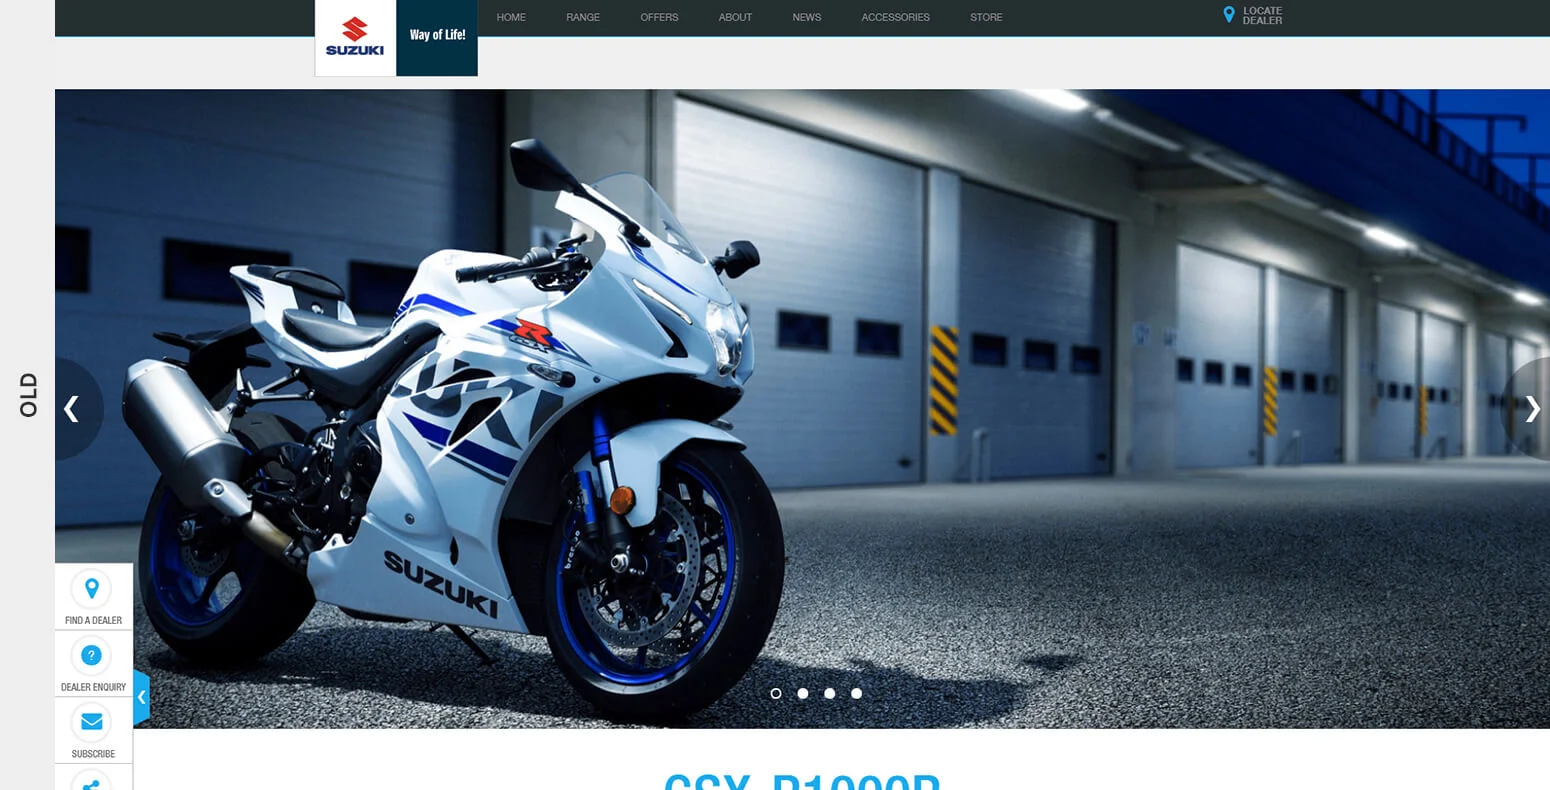 Old Suzuki Website Design Comparison